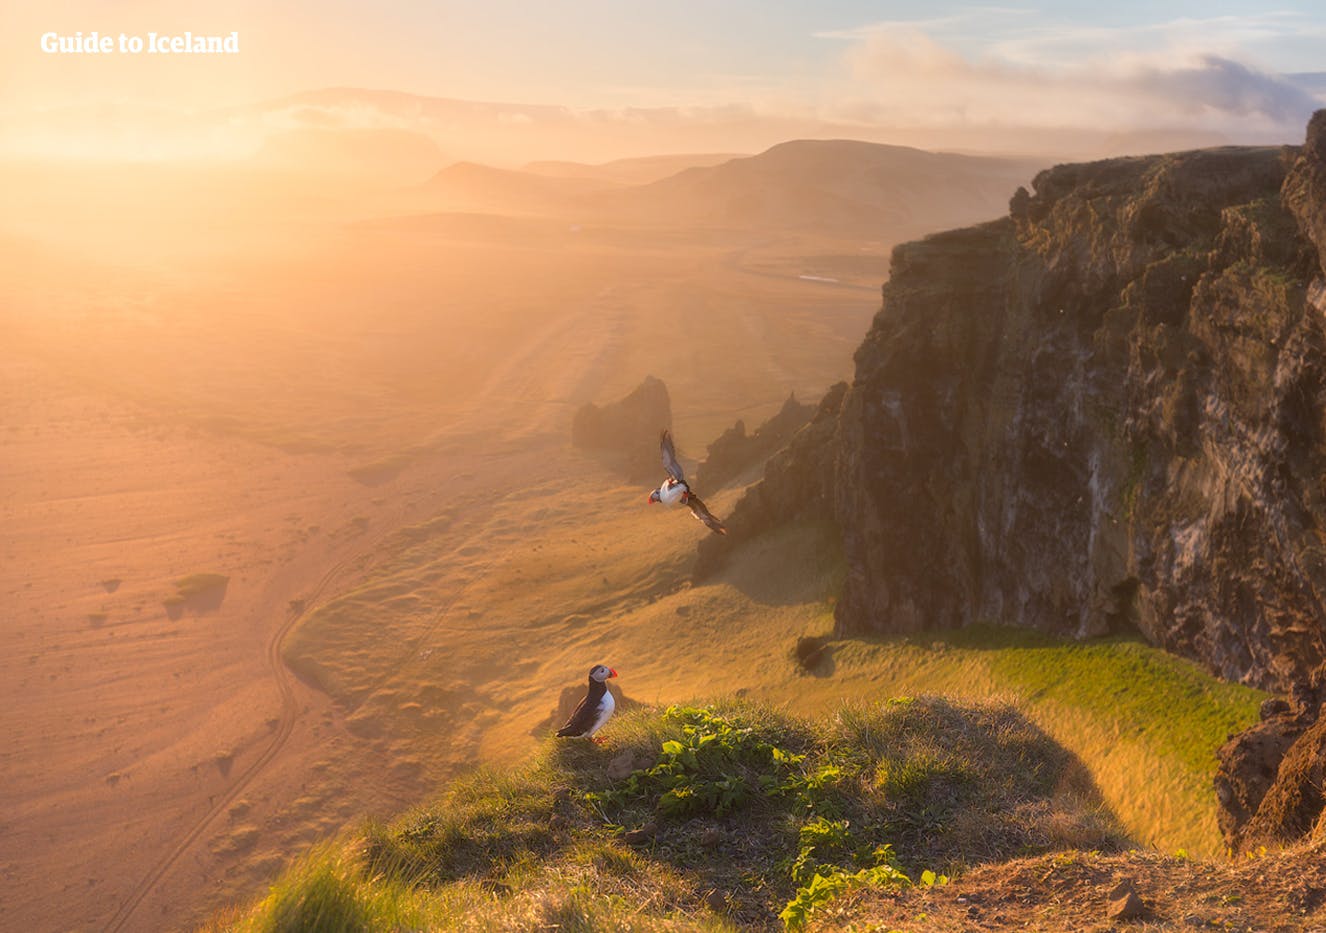 หน้าผา Dyrhólaey เป็นหนึ่งในสถานที่ดูนกพัฟฟินยอดนิยมของไอซ์แลนด์ มีทัศนียภาพที่งดงามรอบทิศ